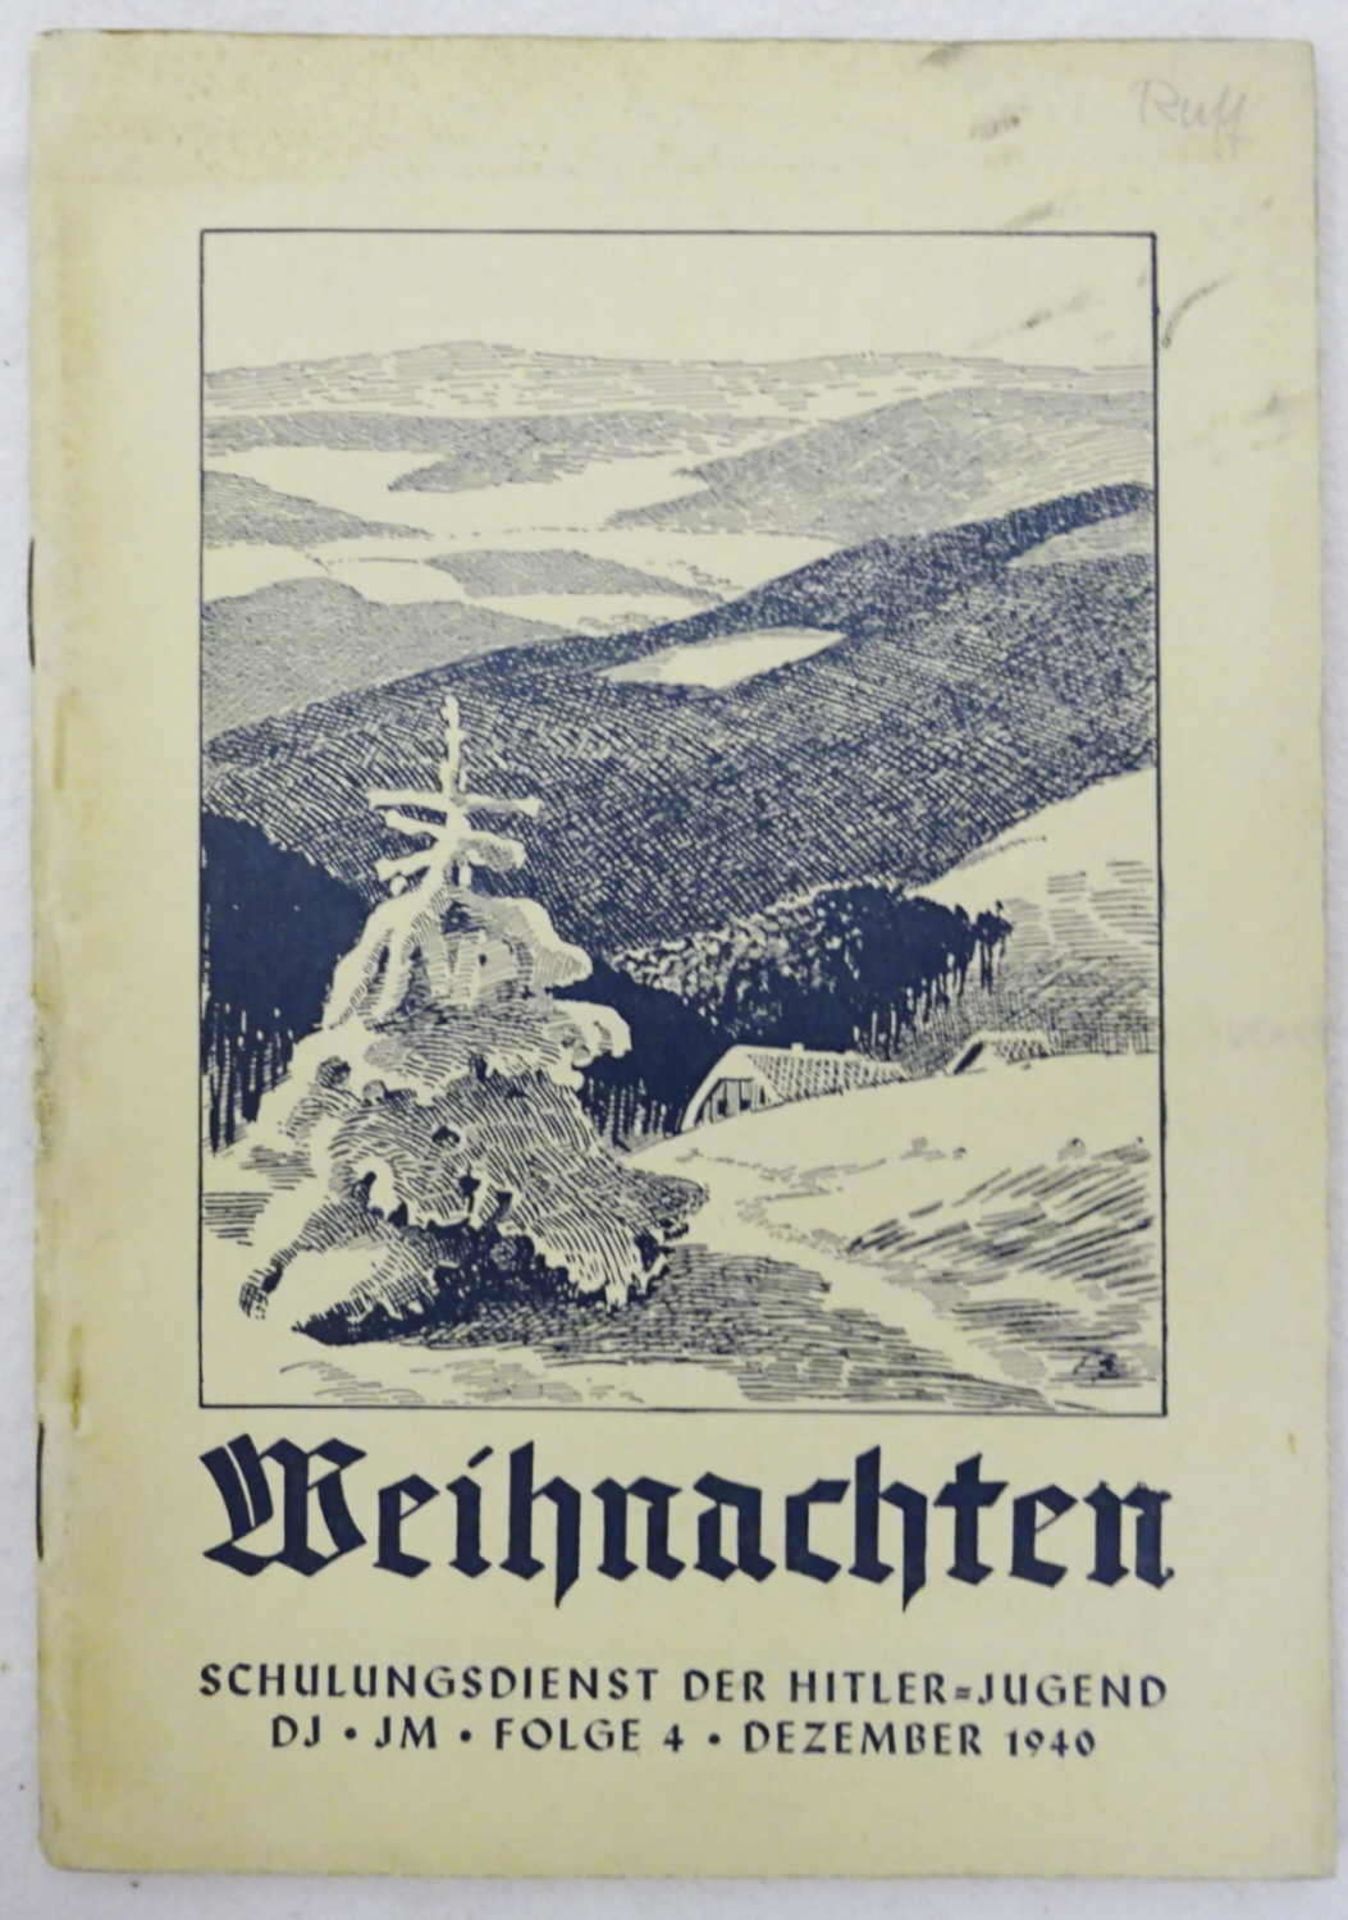 "Weihnachten" - Schulungsdienst der Hitler = Jugend DJ - JM - Folge 4 - Dezember 1940